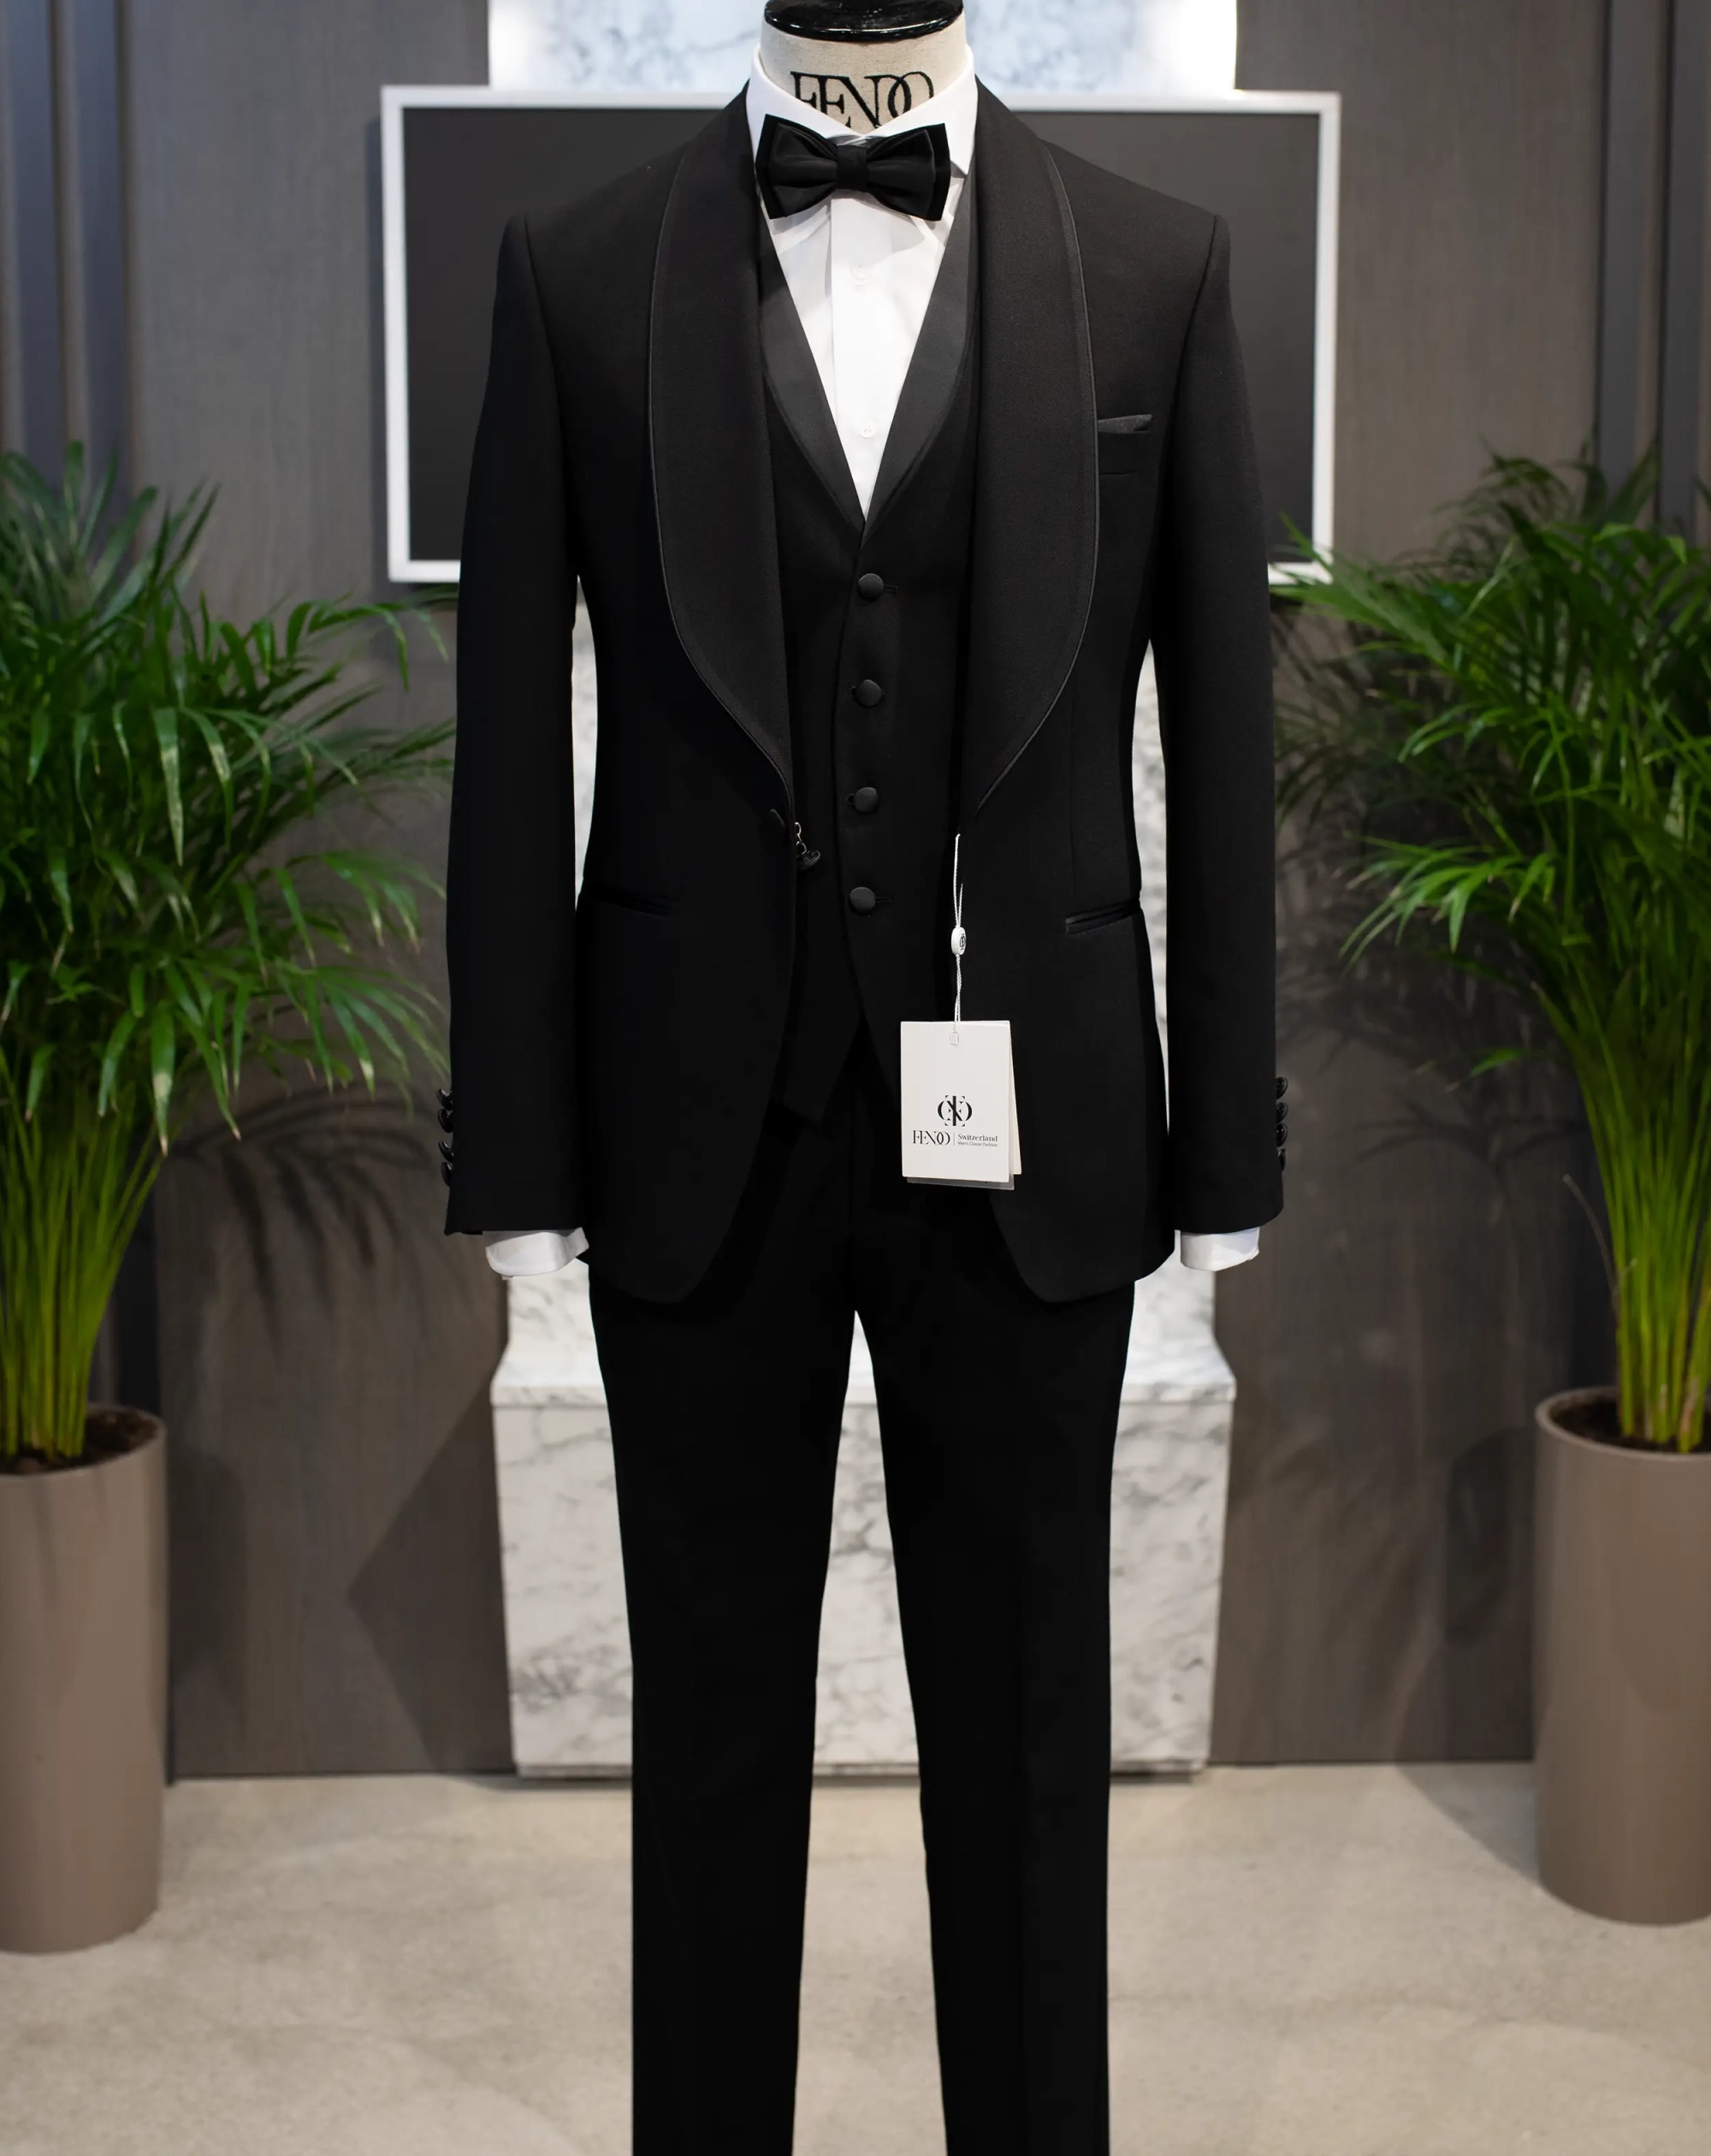 Limoges black tuxedo suit